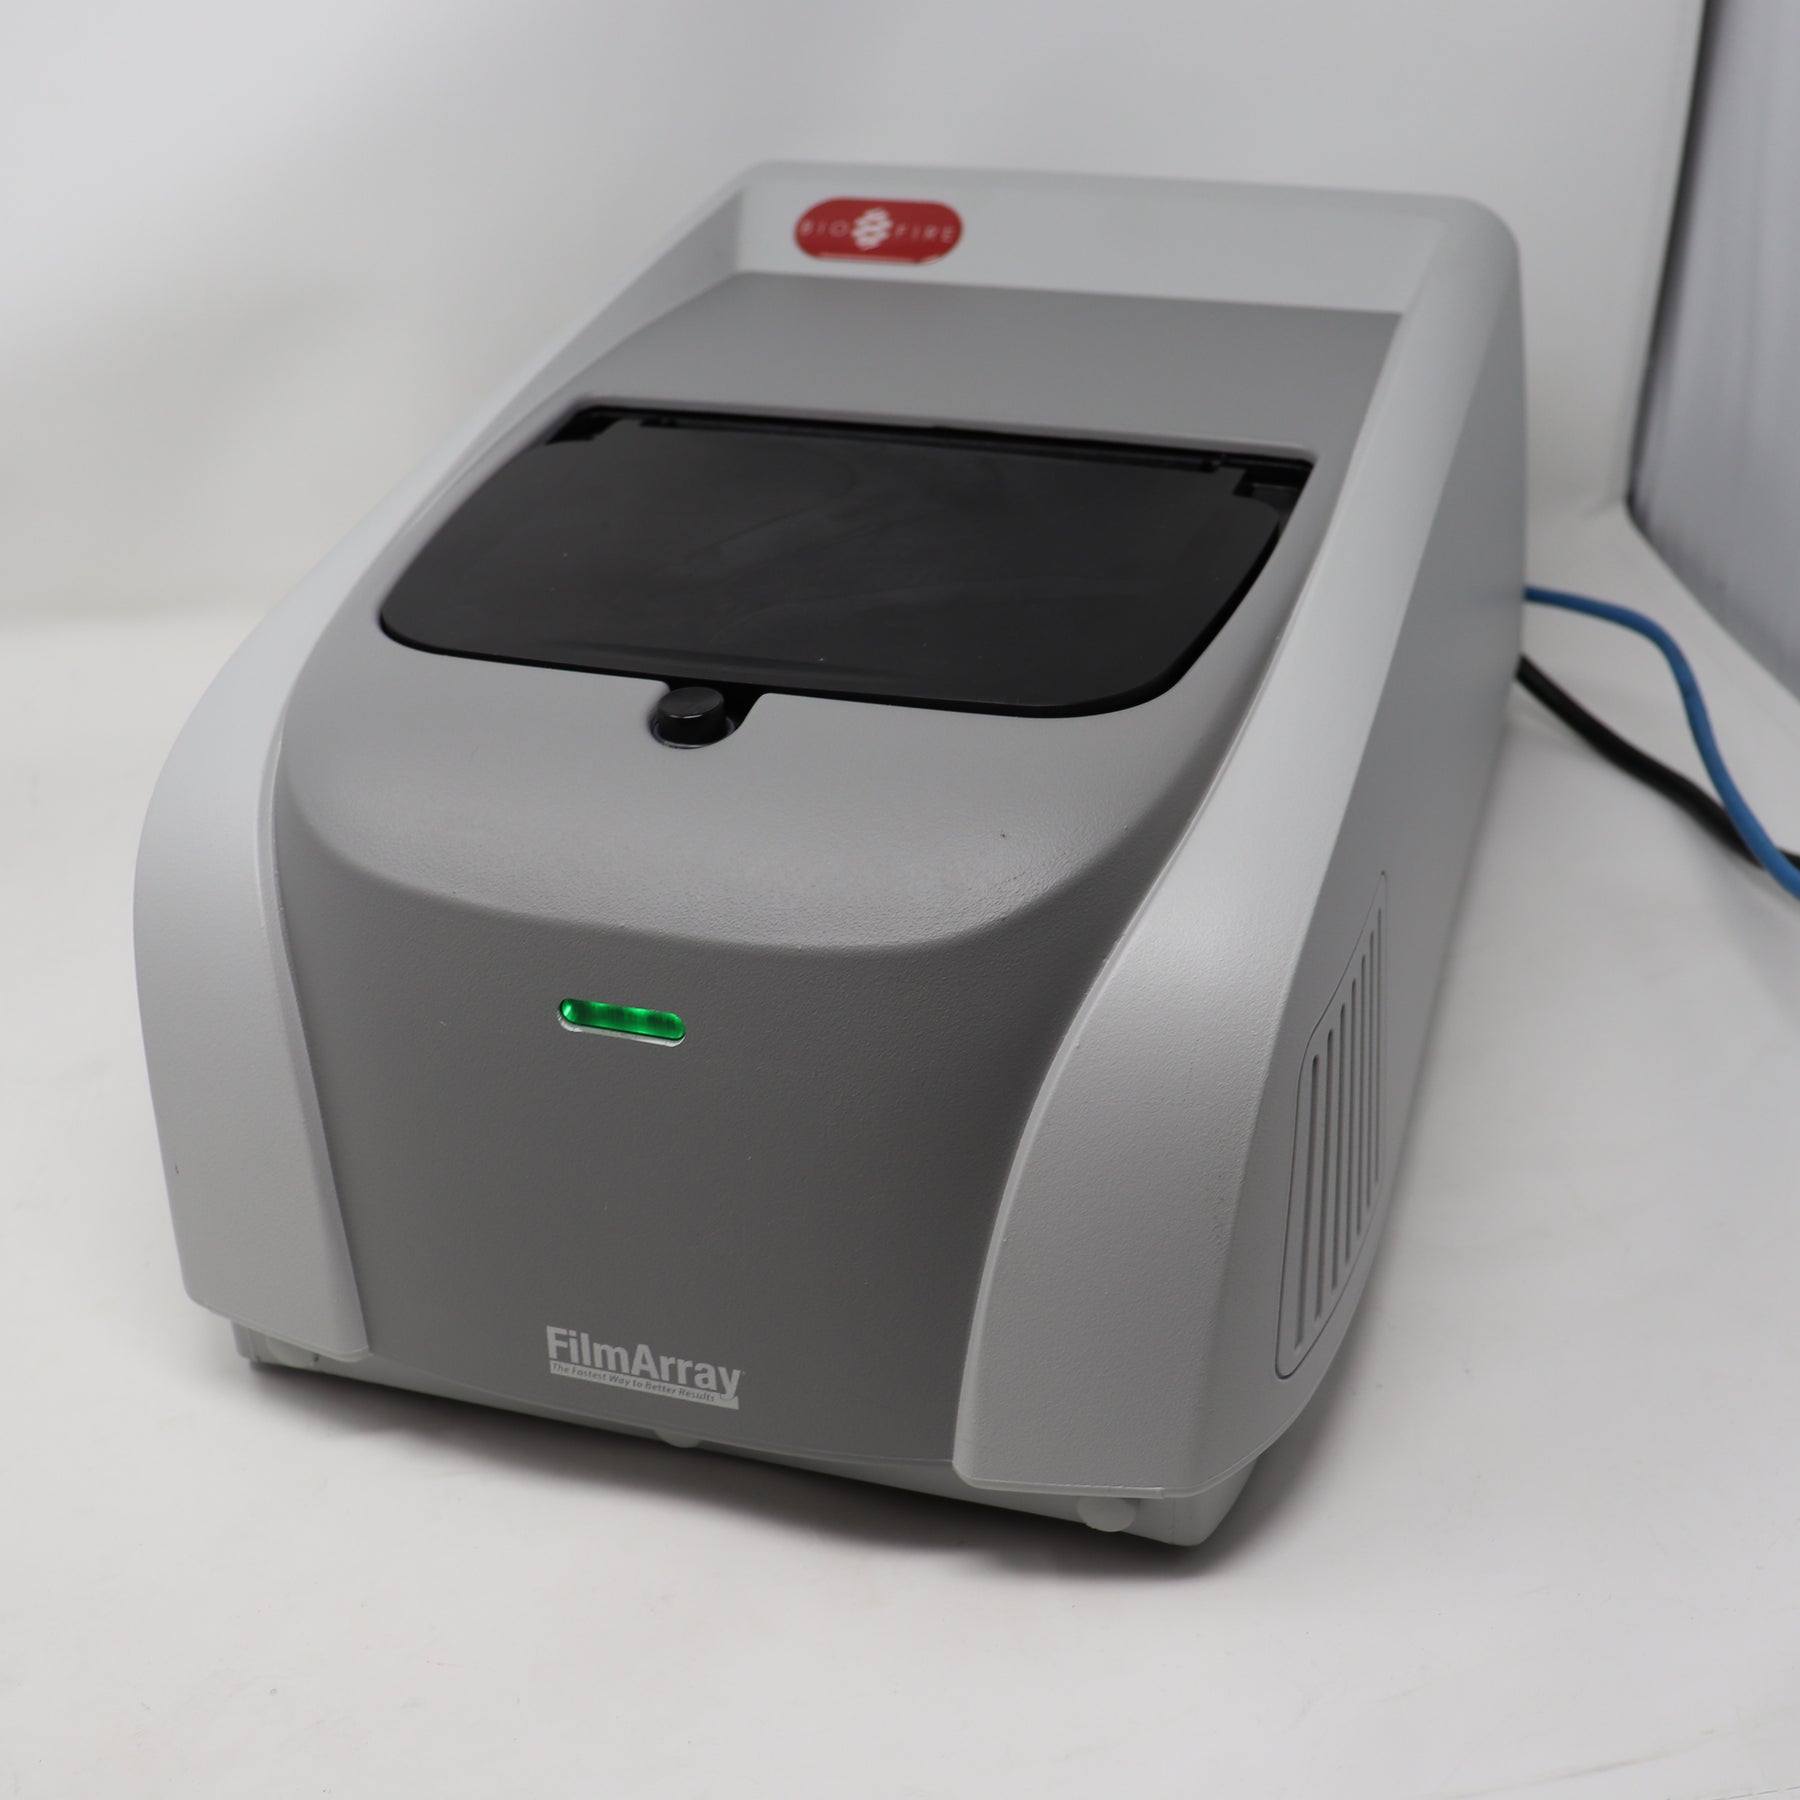 BioFire FilmArray 2.0 Multiplex PCR System